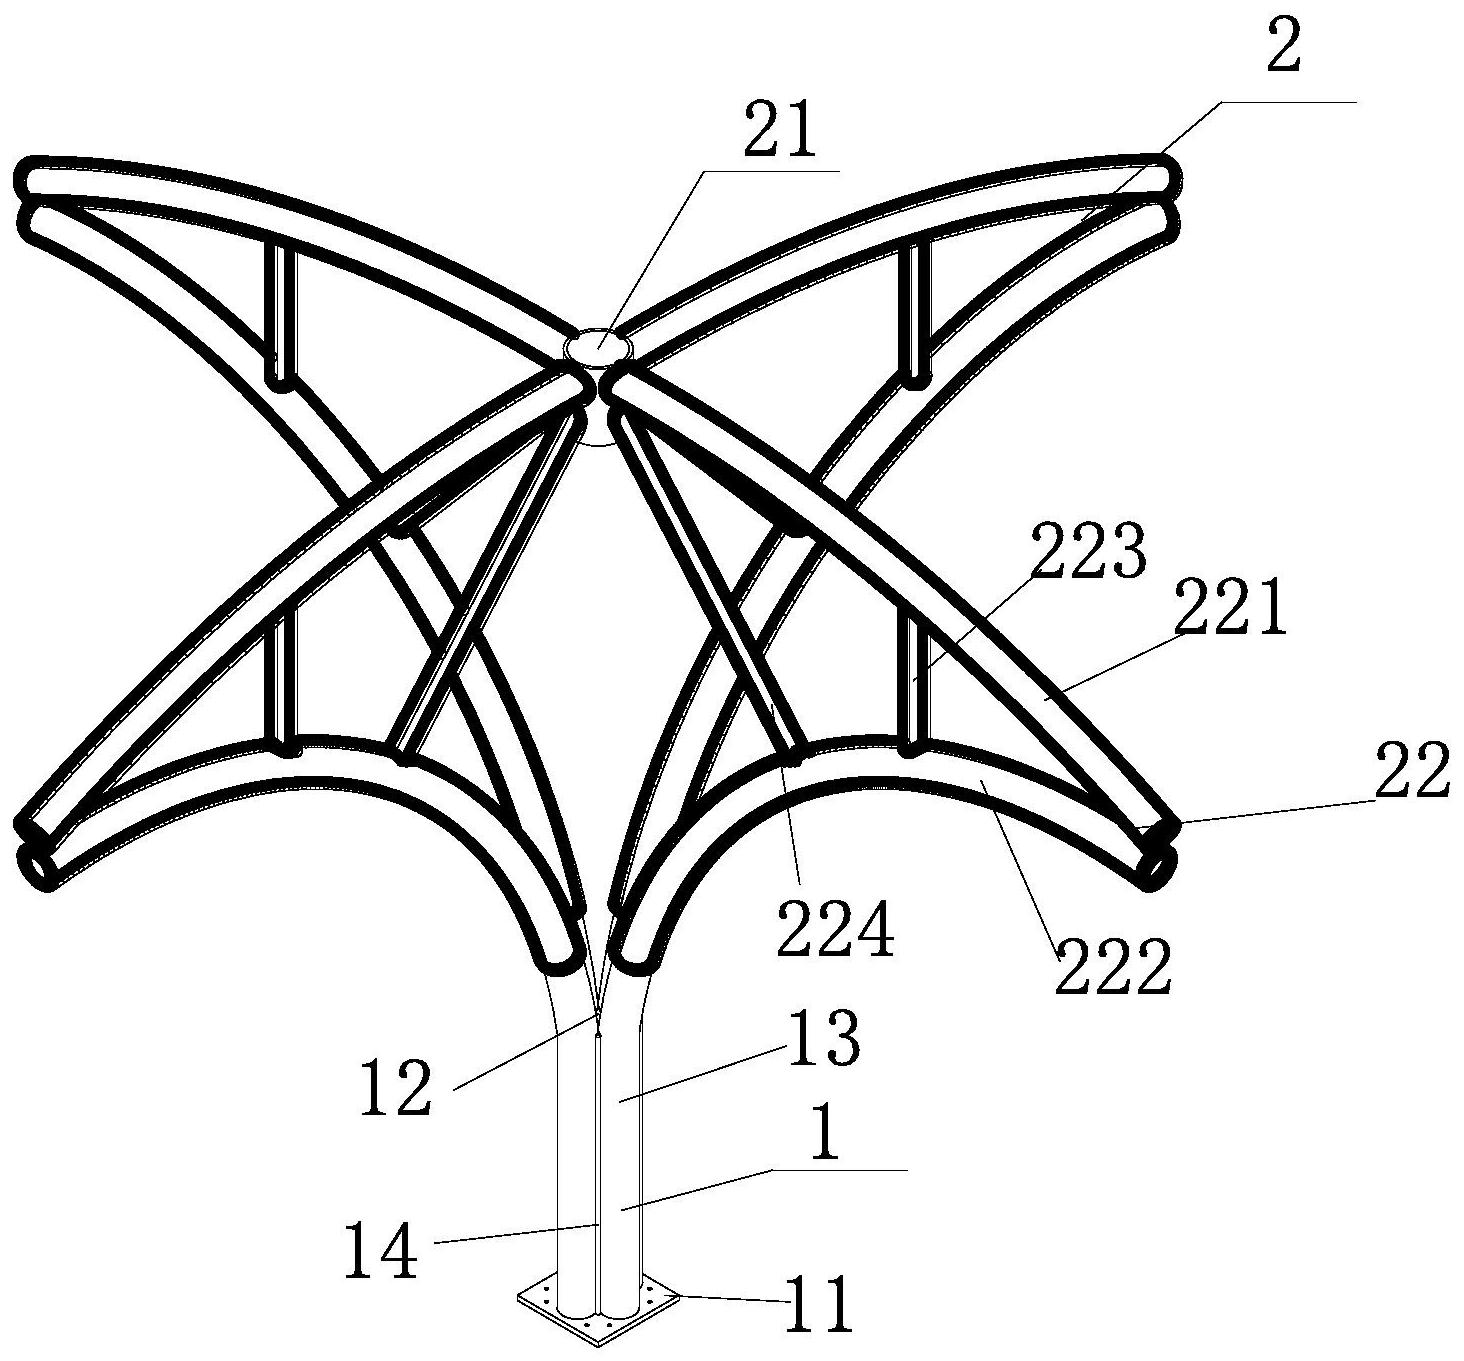 一种伞形钢管束柱及安装方法,所述伞形钢管束柱包括:钢管束支撑结构